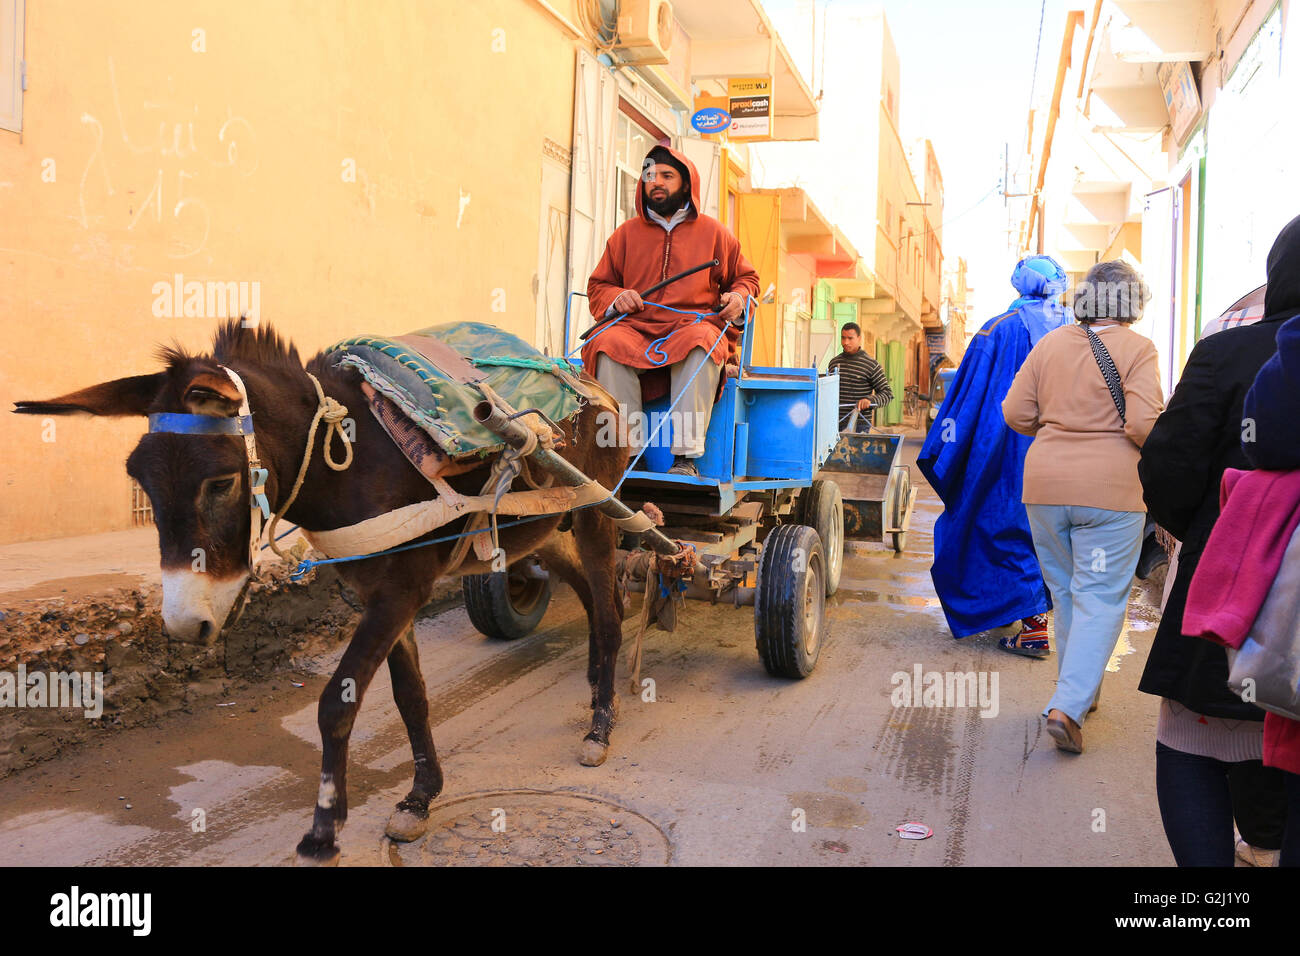 Marrakech, Maroc : rue étroite à Rissani avec des ânes et des vêtements colorés au Maroc Banque D'Images